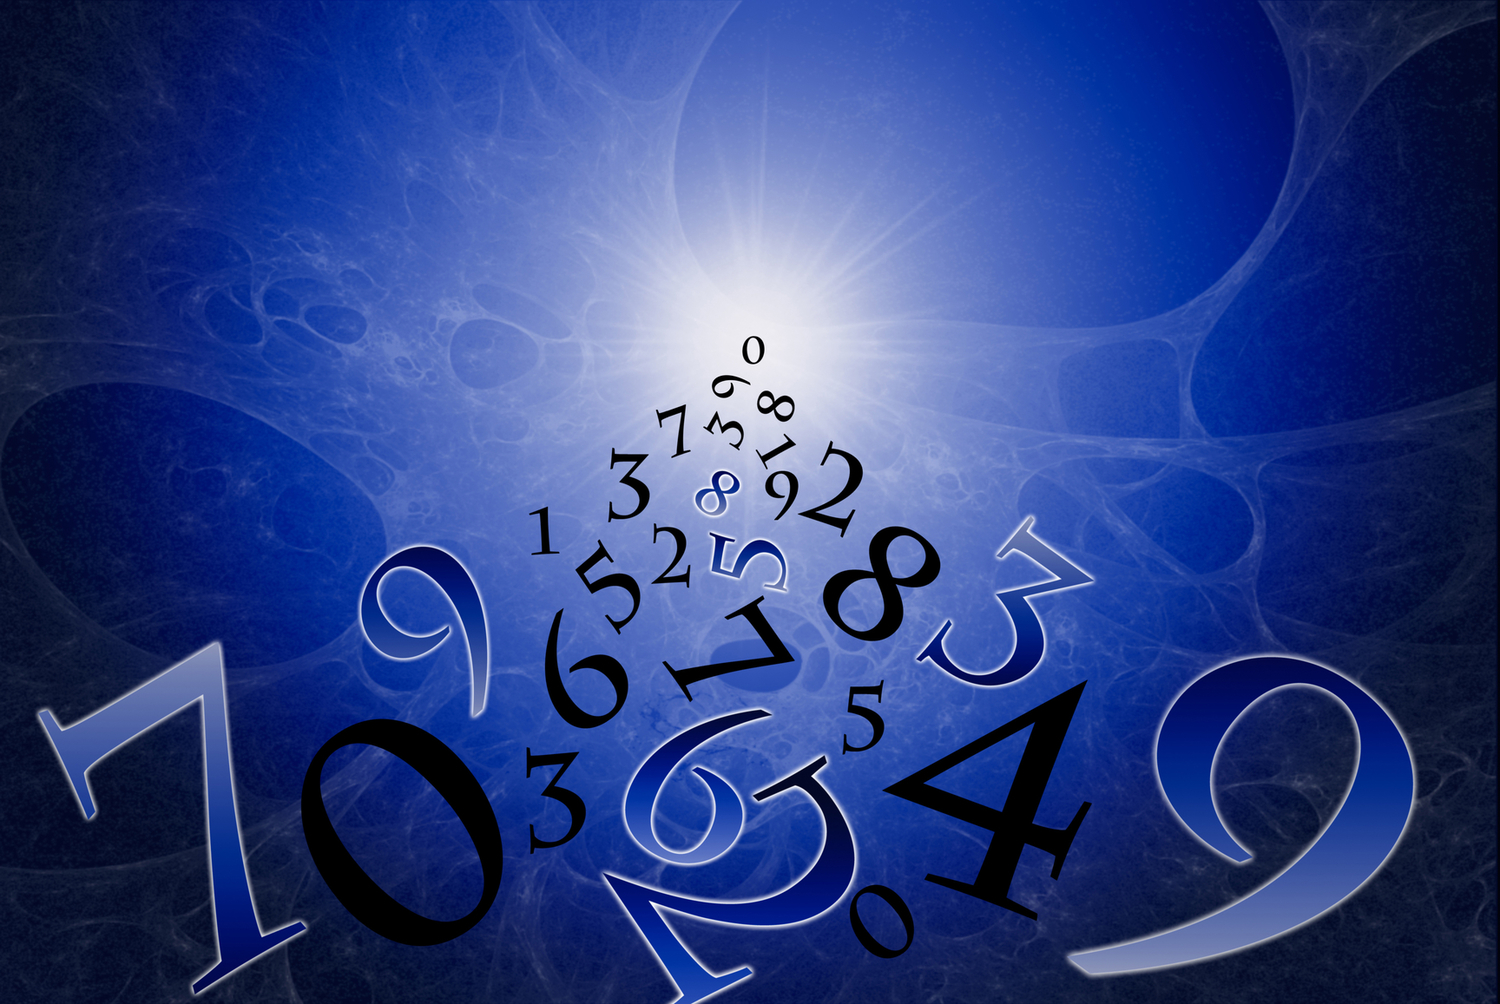 Особистим числом долі називають число, отримане в результаті підсумовування всіх цифр народження людини (день, місяць, рік)